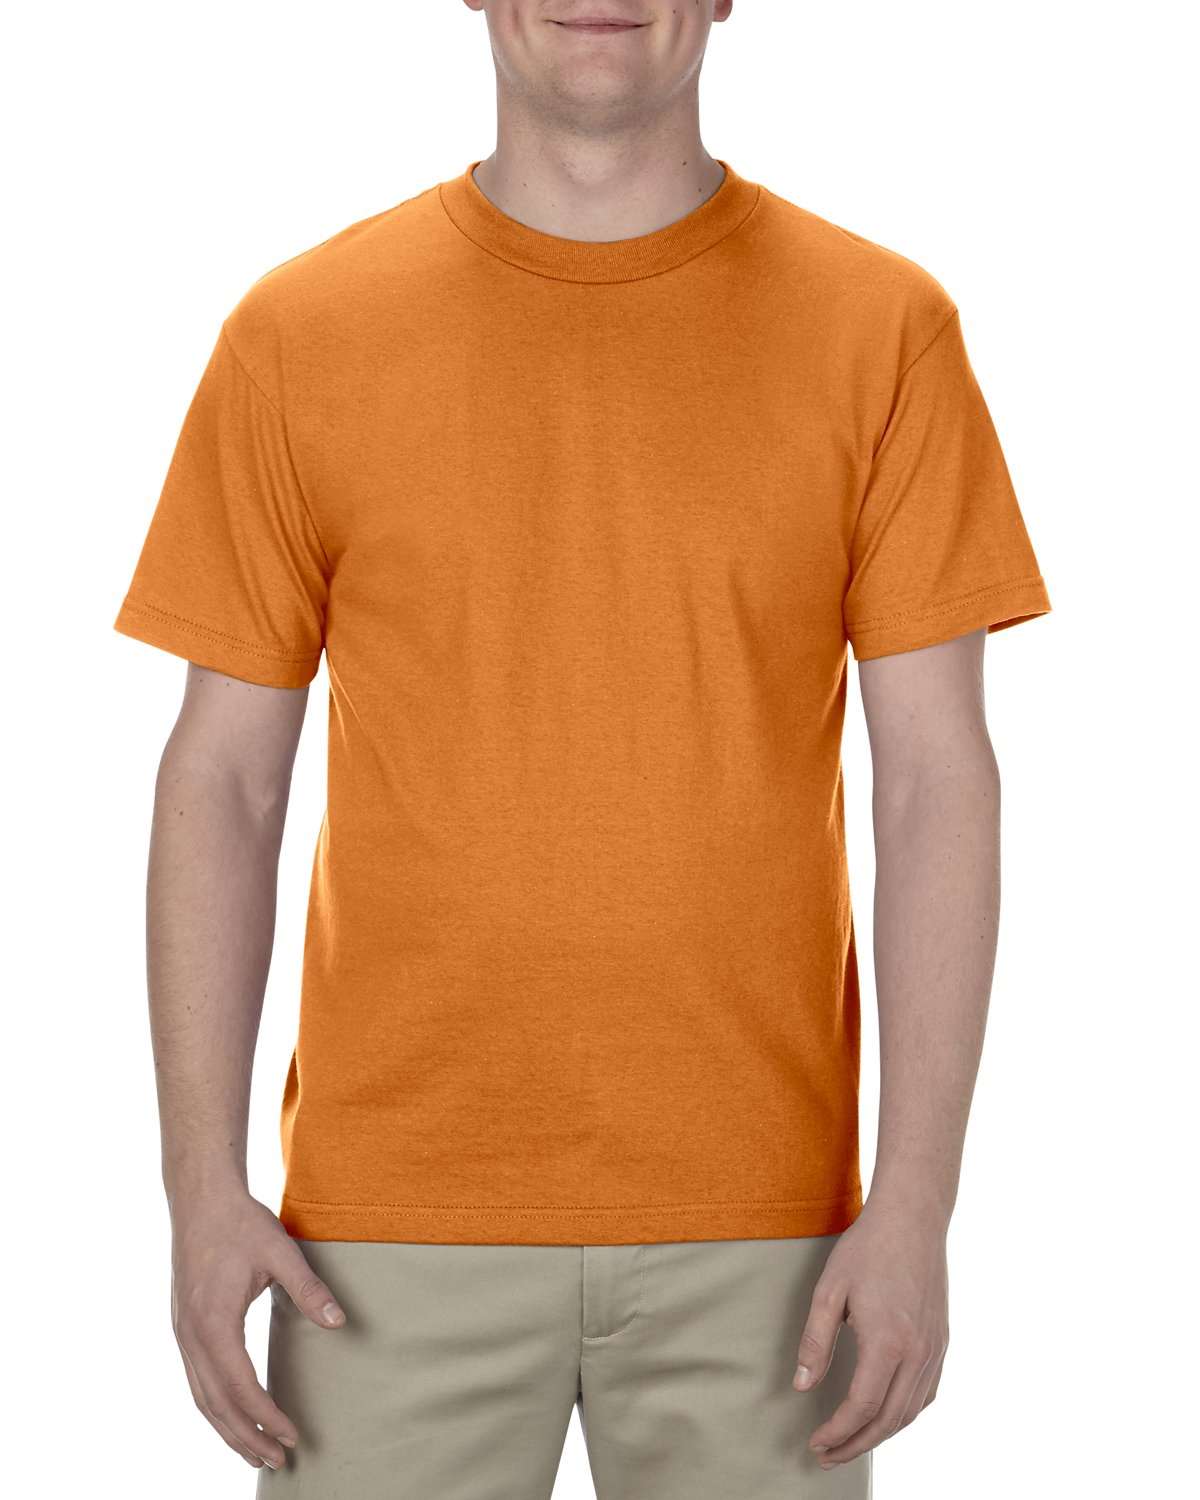 Alstyle Adult 6.0oz 100% Cotton T-Shirt-Plus Sizes